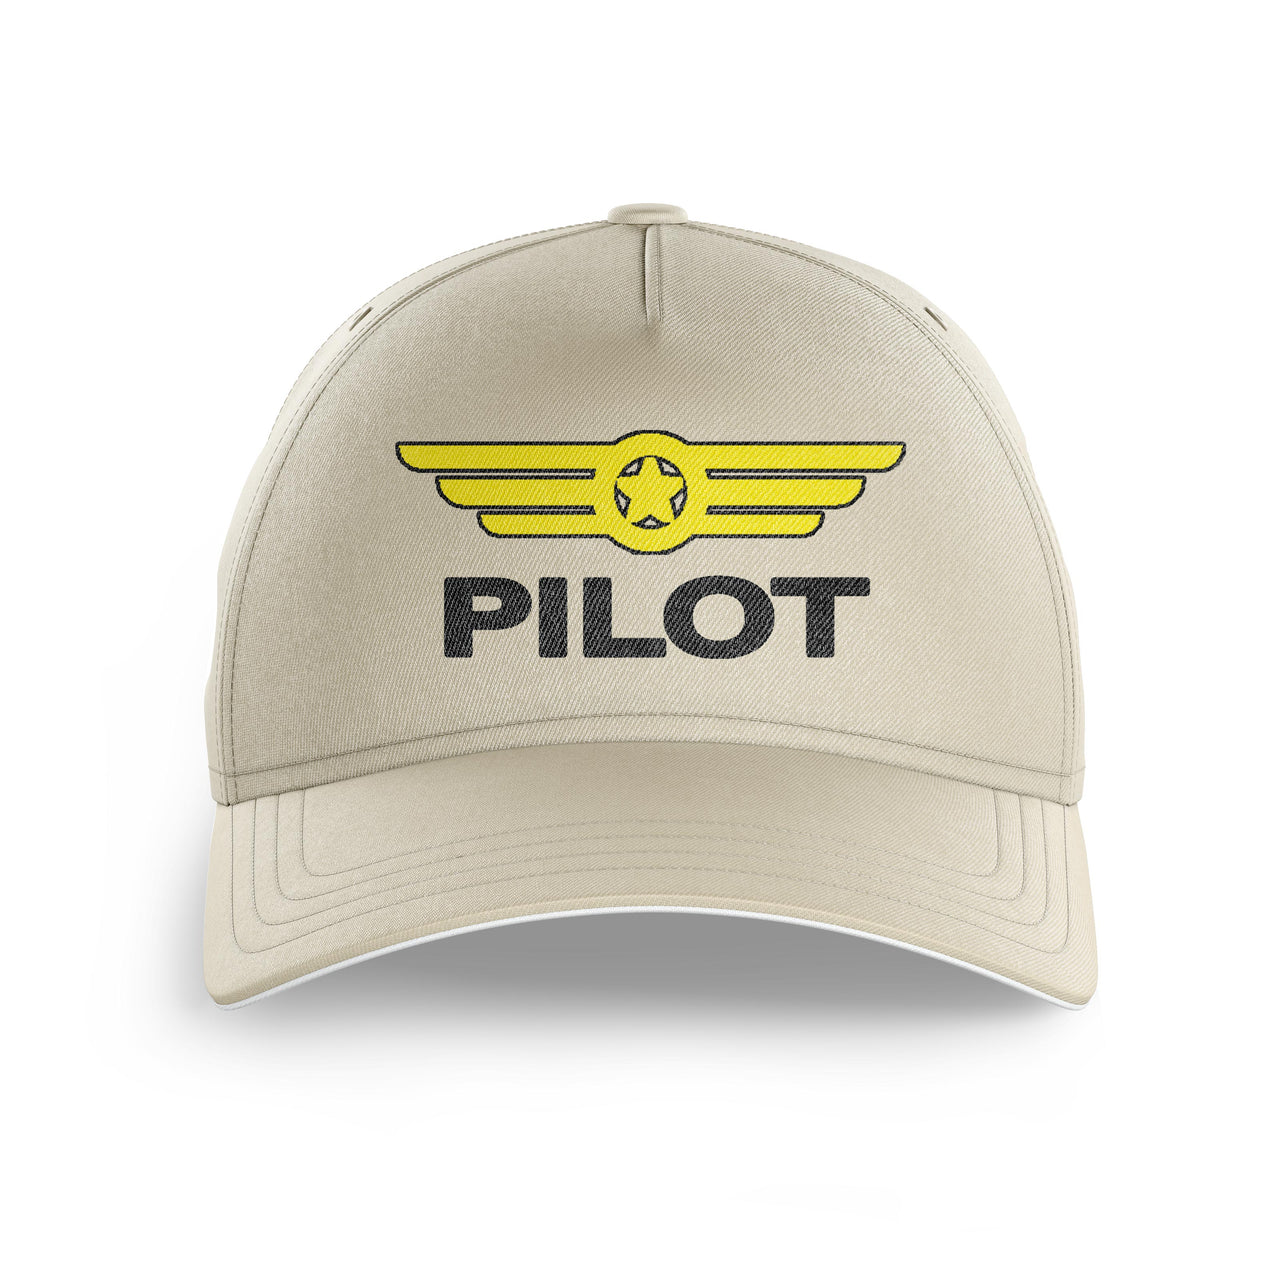 Pilot & Badge Printed Hats